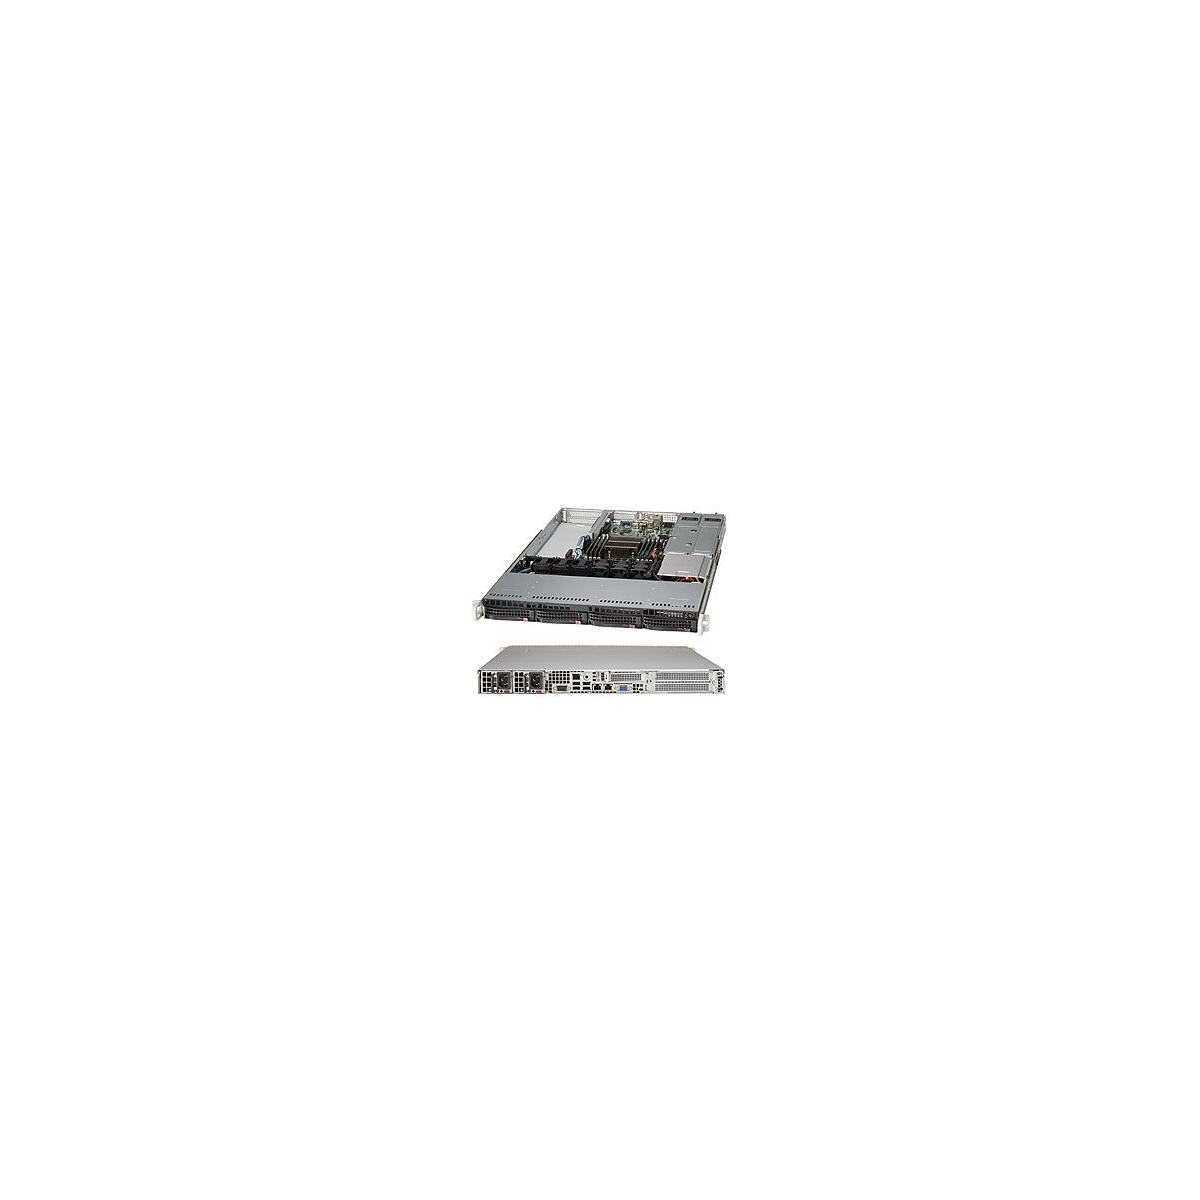 Supermicro SC815TQ-R700WB - Rack - Server - Black - EATX - 1U - HDD - LAN - Power